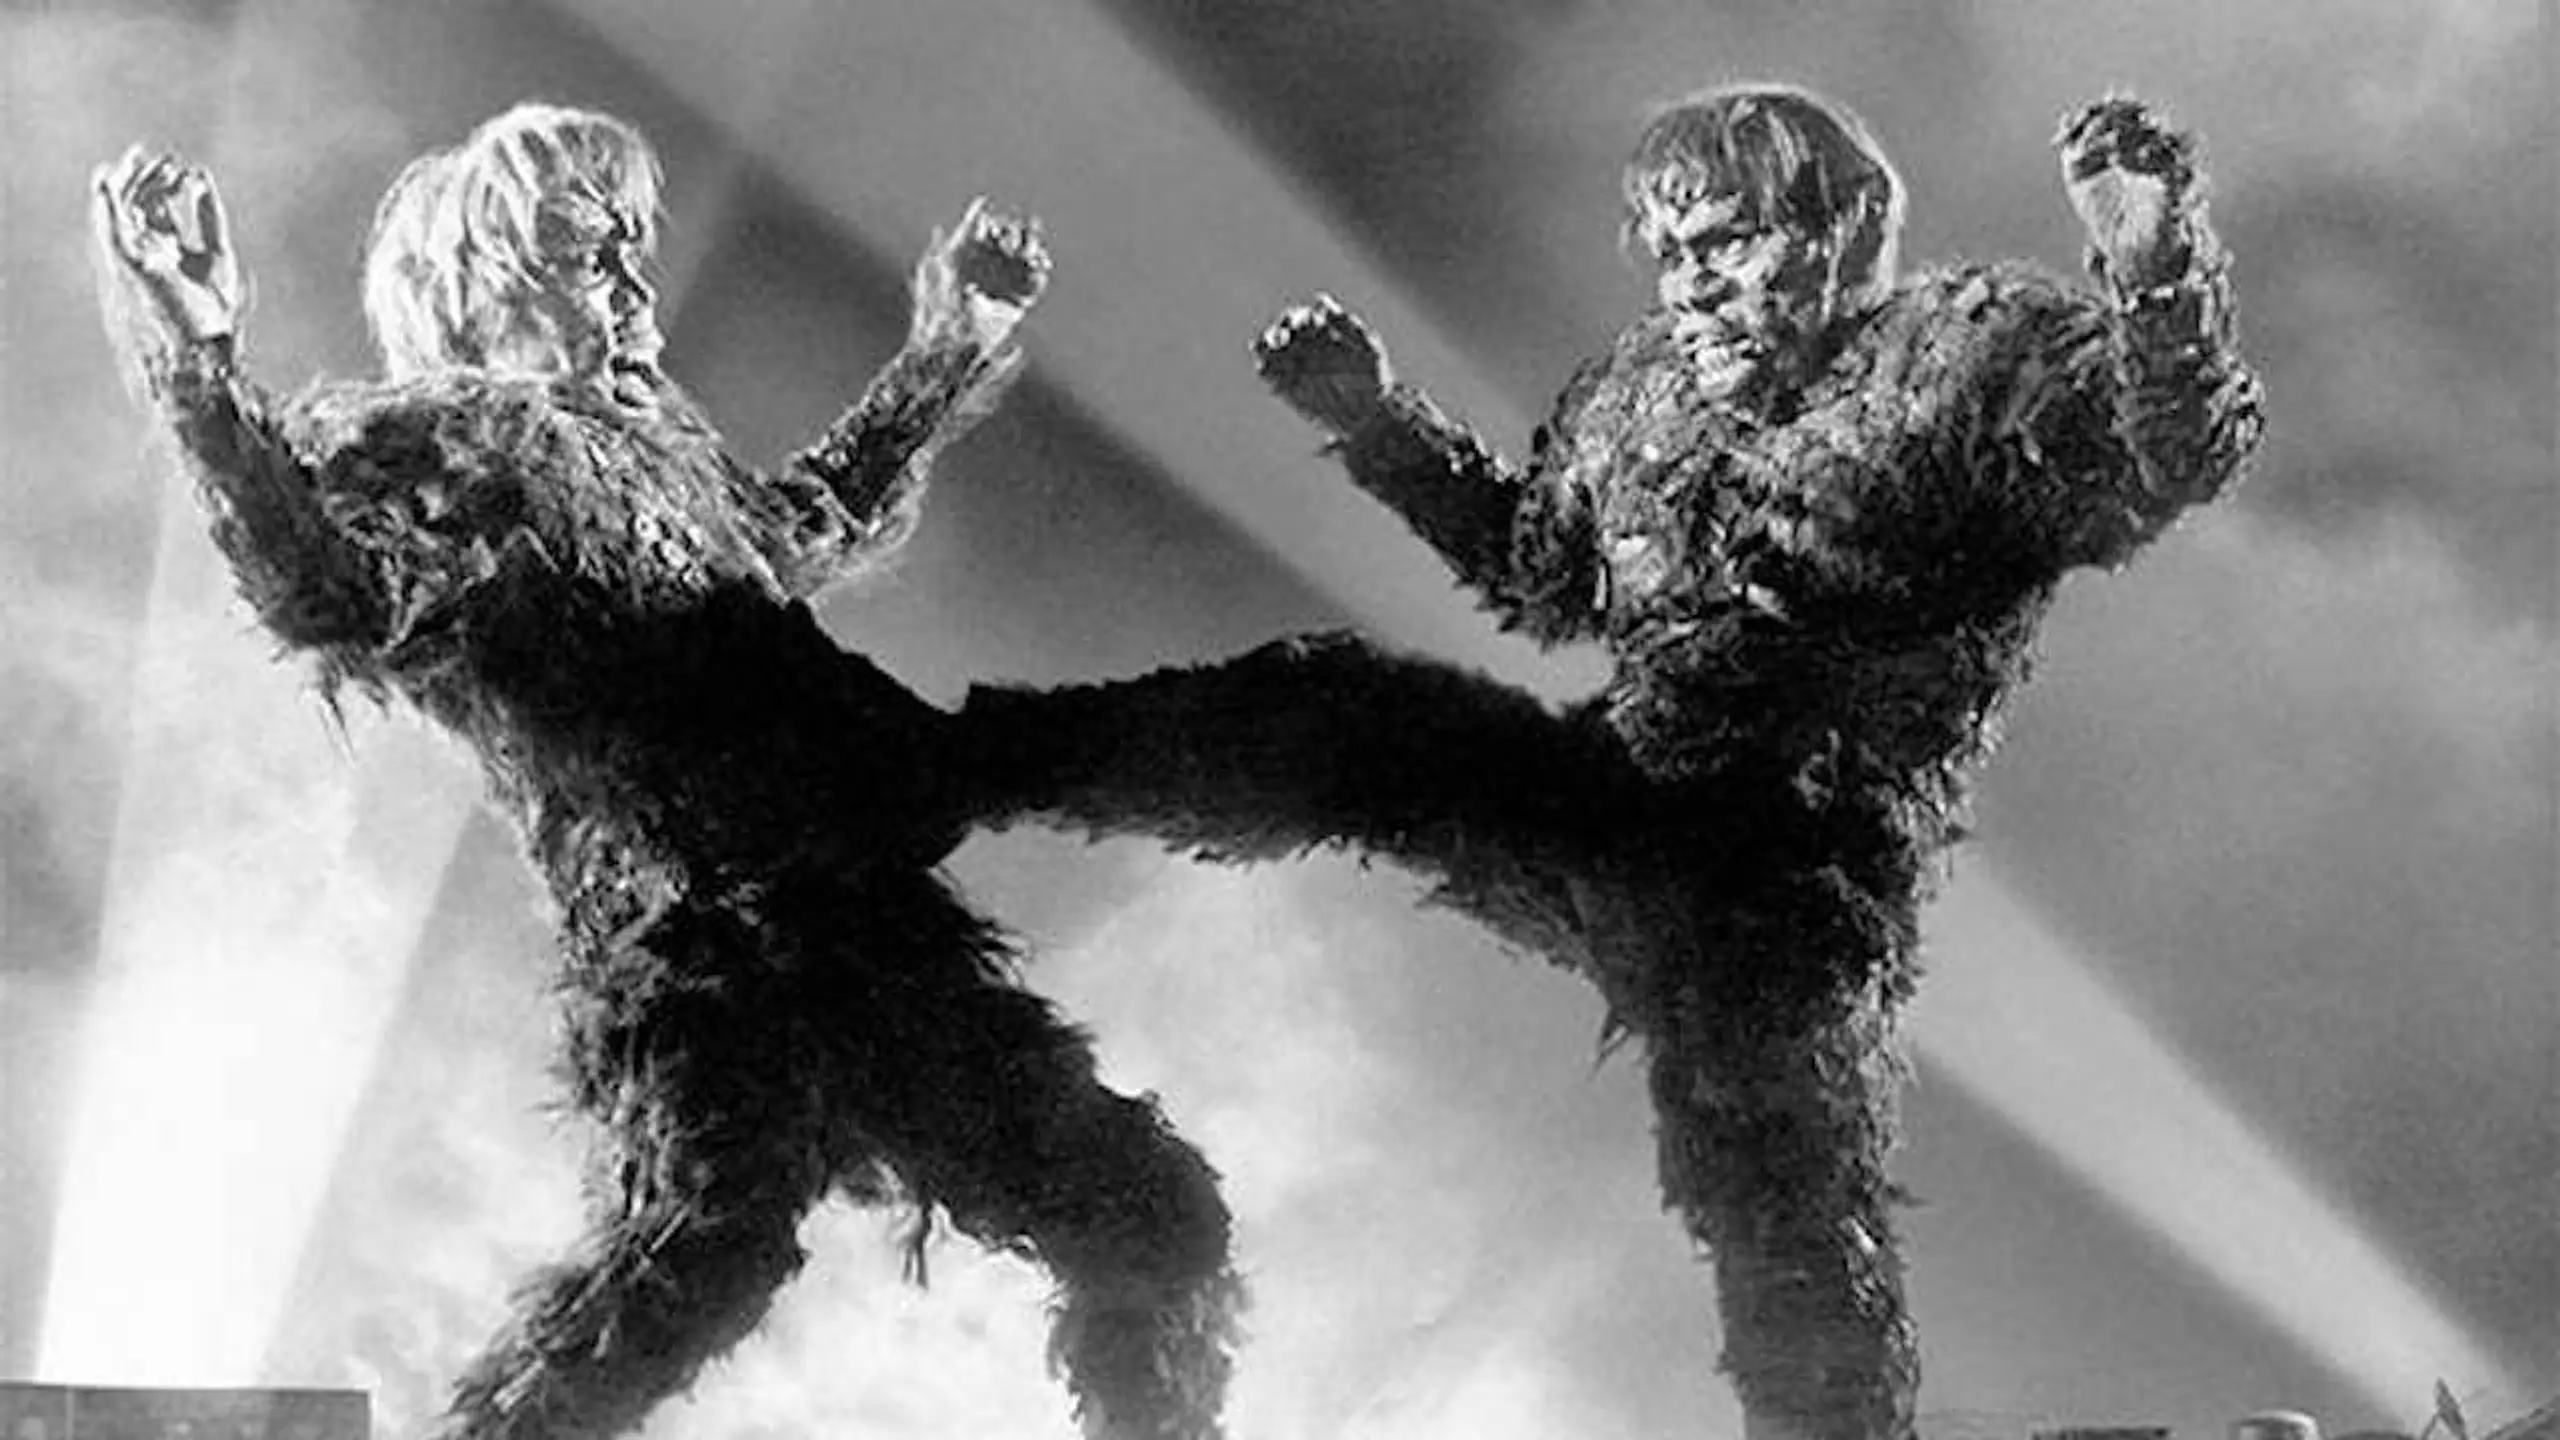 Frankenstein - Zweikampf der Giganten